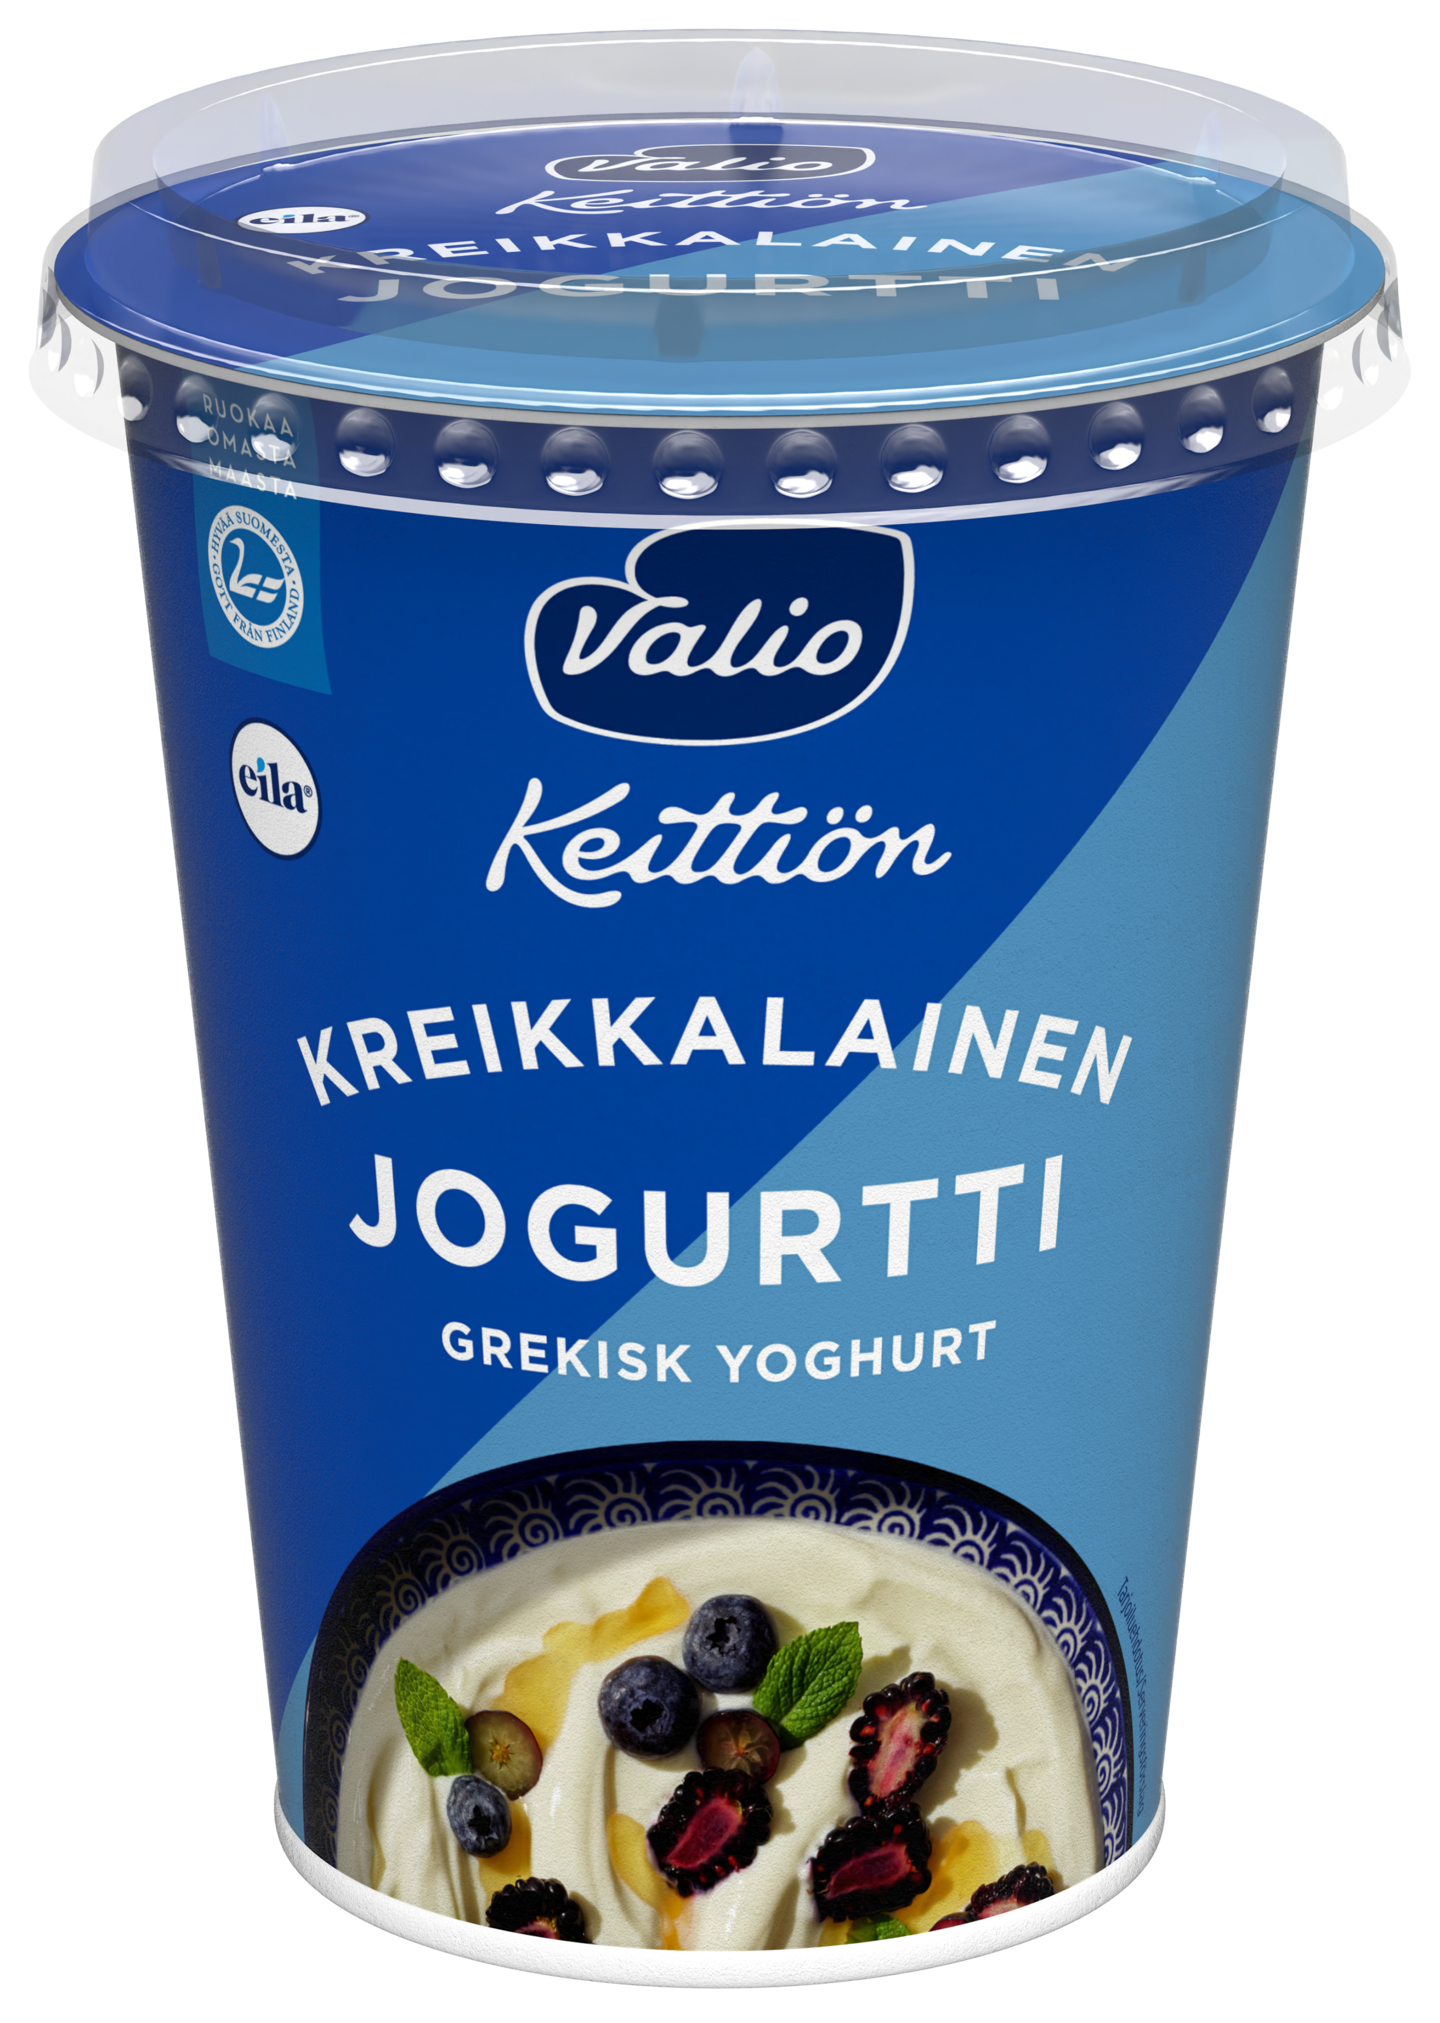 Valio Keittiön kreikkalainen jogurtti 400g laktoositon